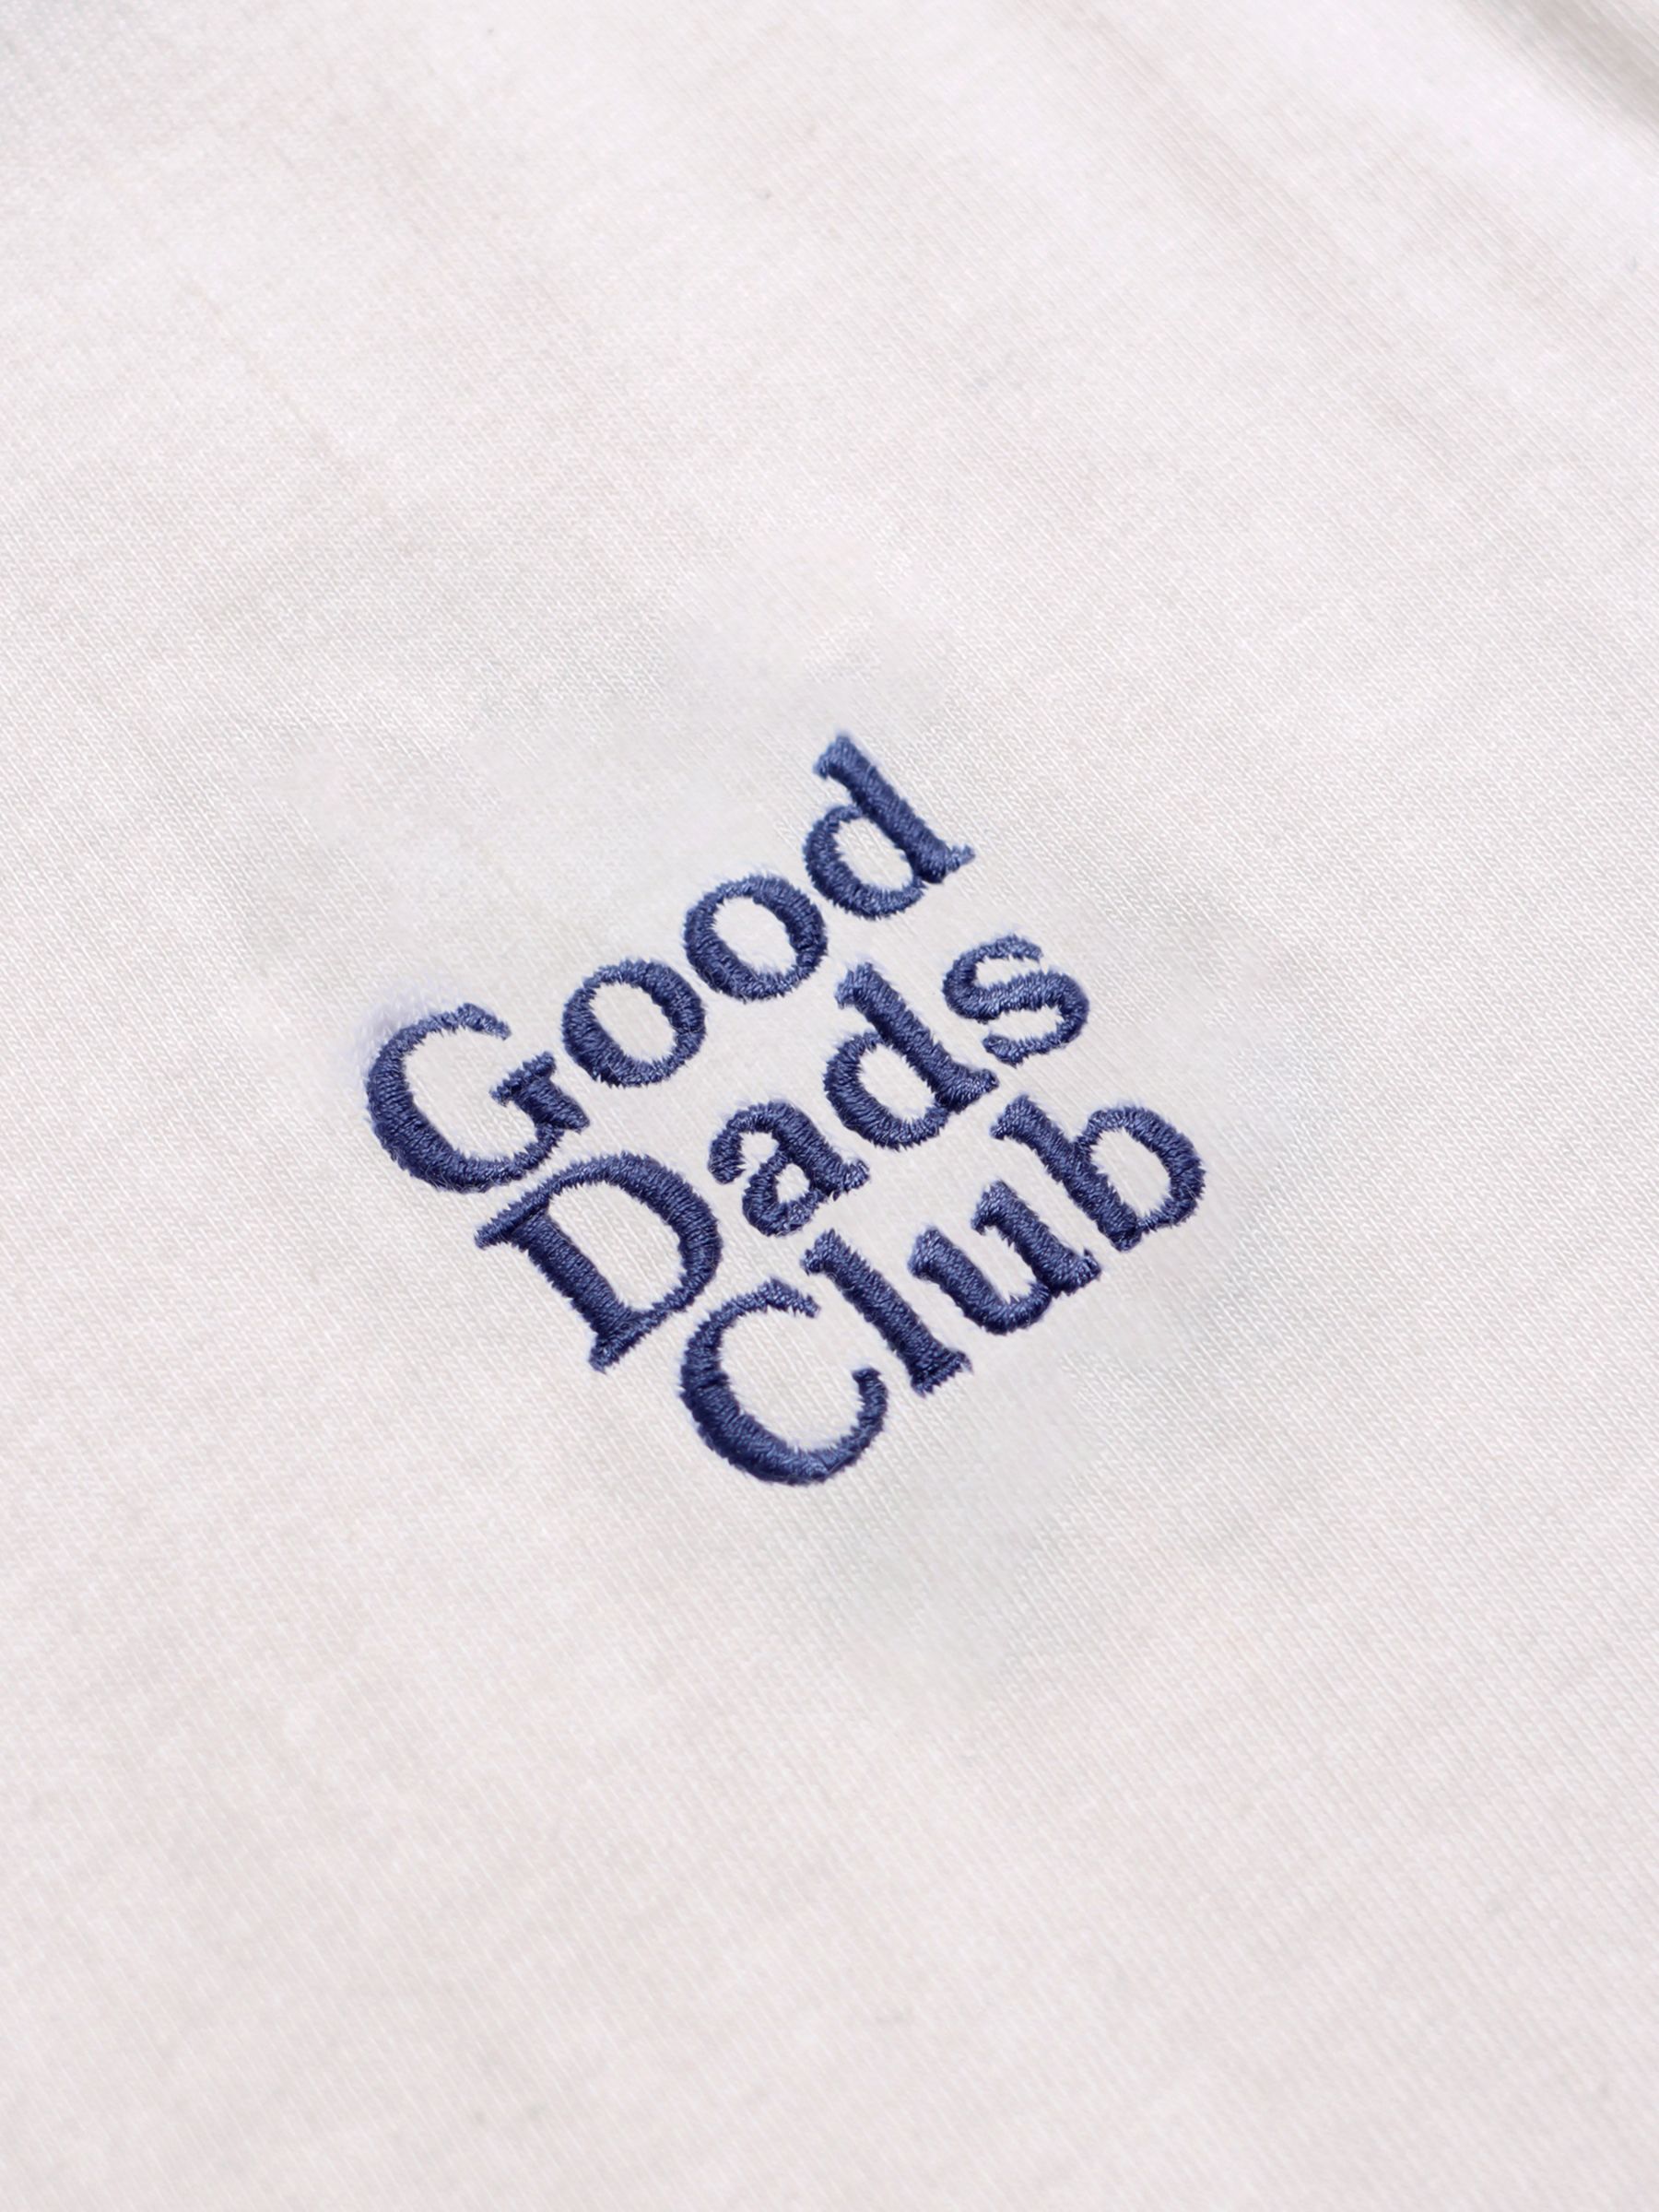 Daddy club. Знак far на футболке.